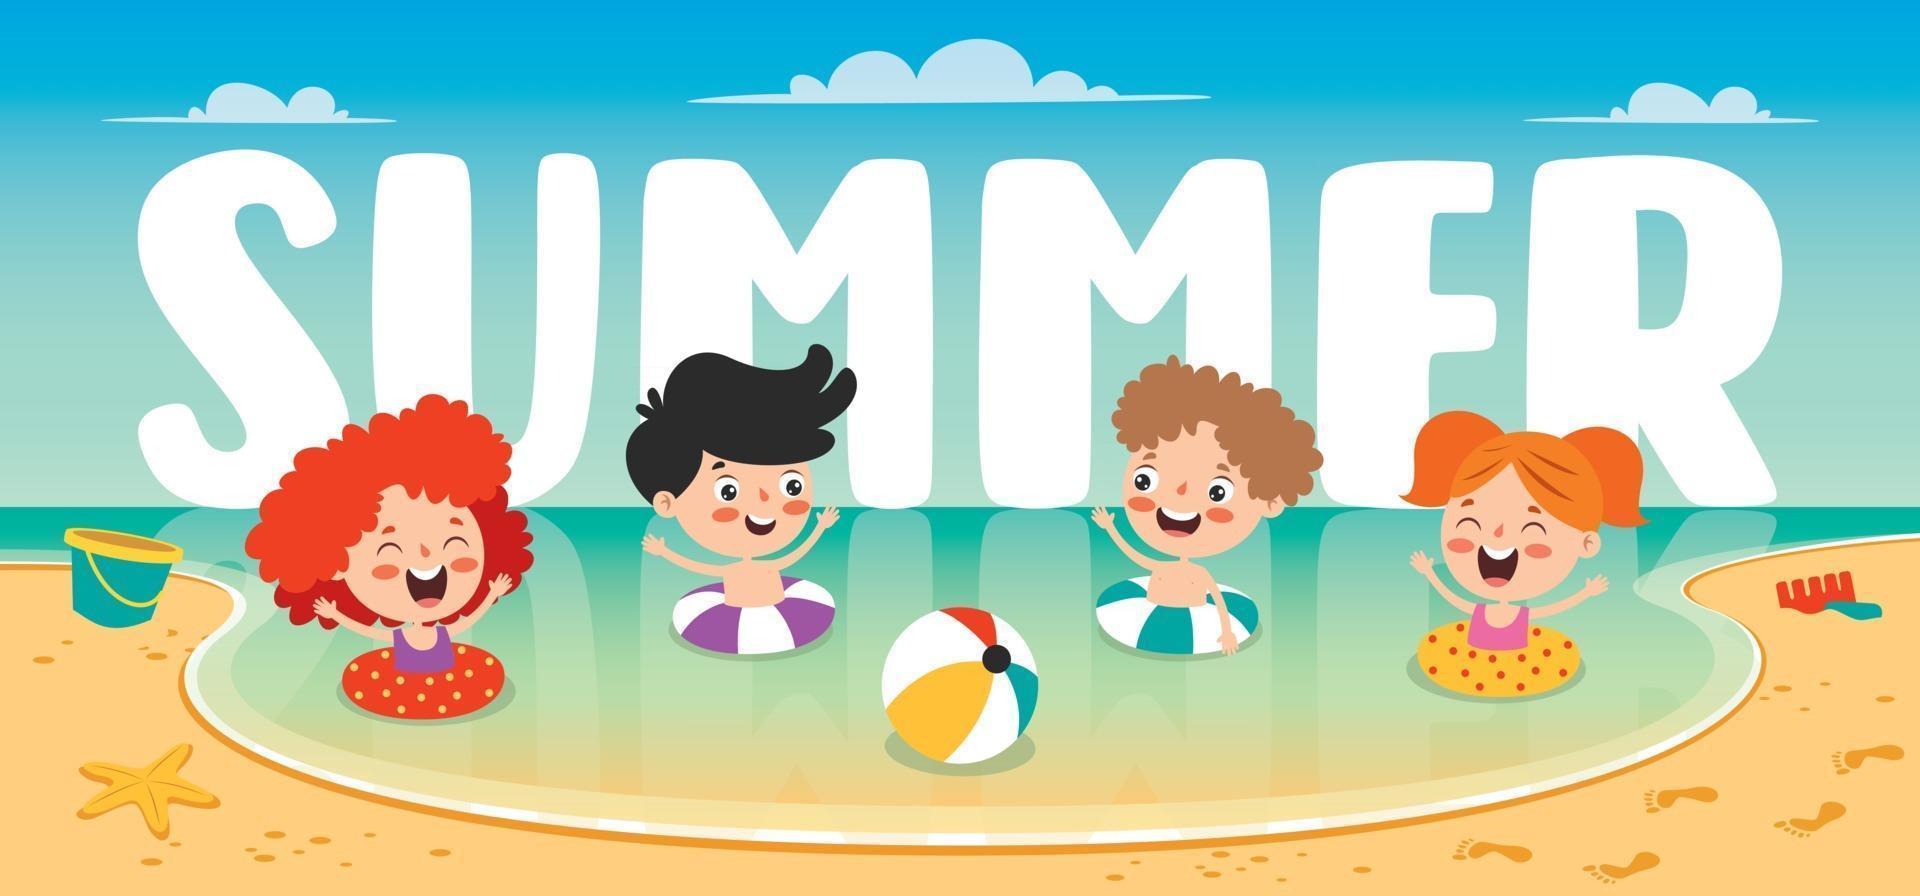 banner plano de verão com personagem de desenho animado vetor